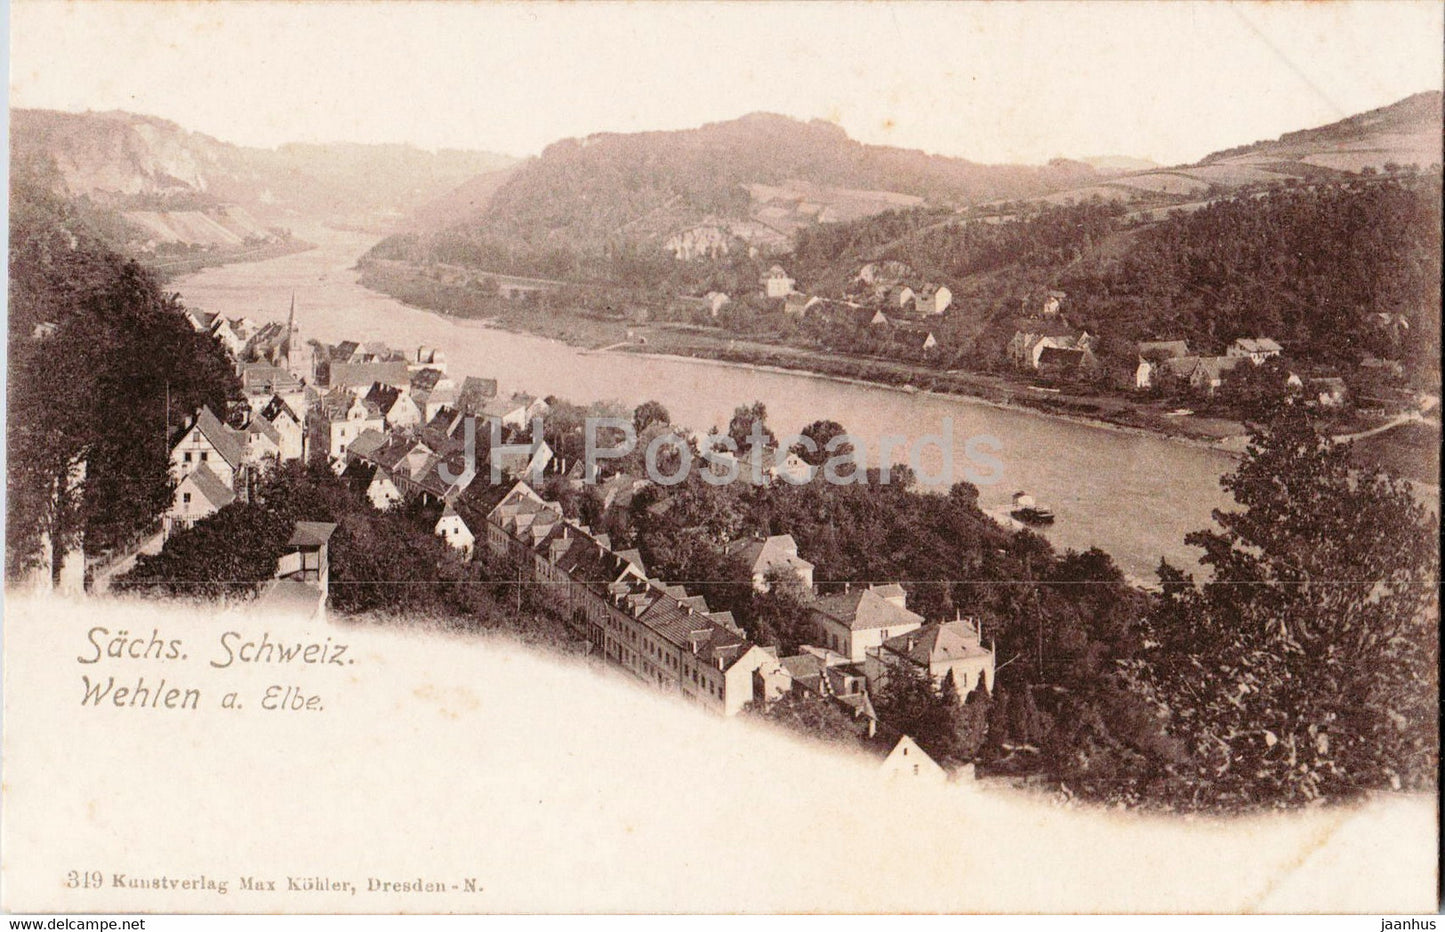 Wehlen a Elbe - Sachs Schweiz - 319 - old postcard - Germany - unused - JH Postcards